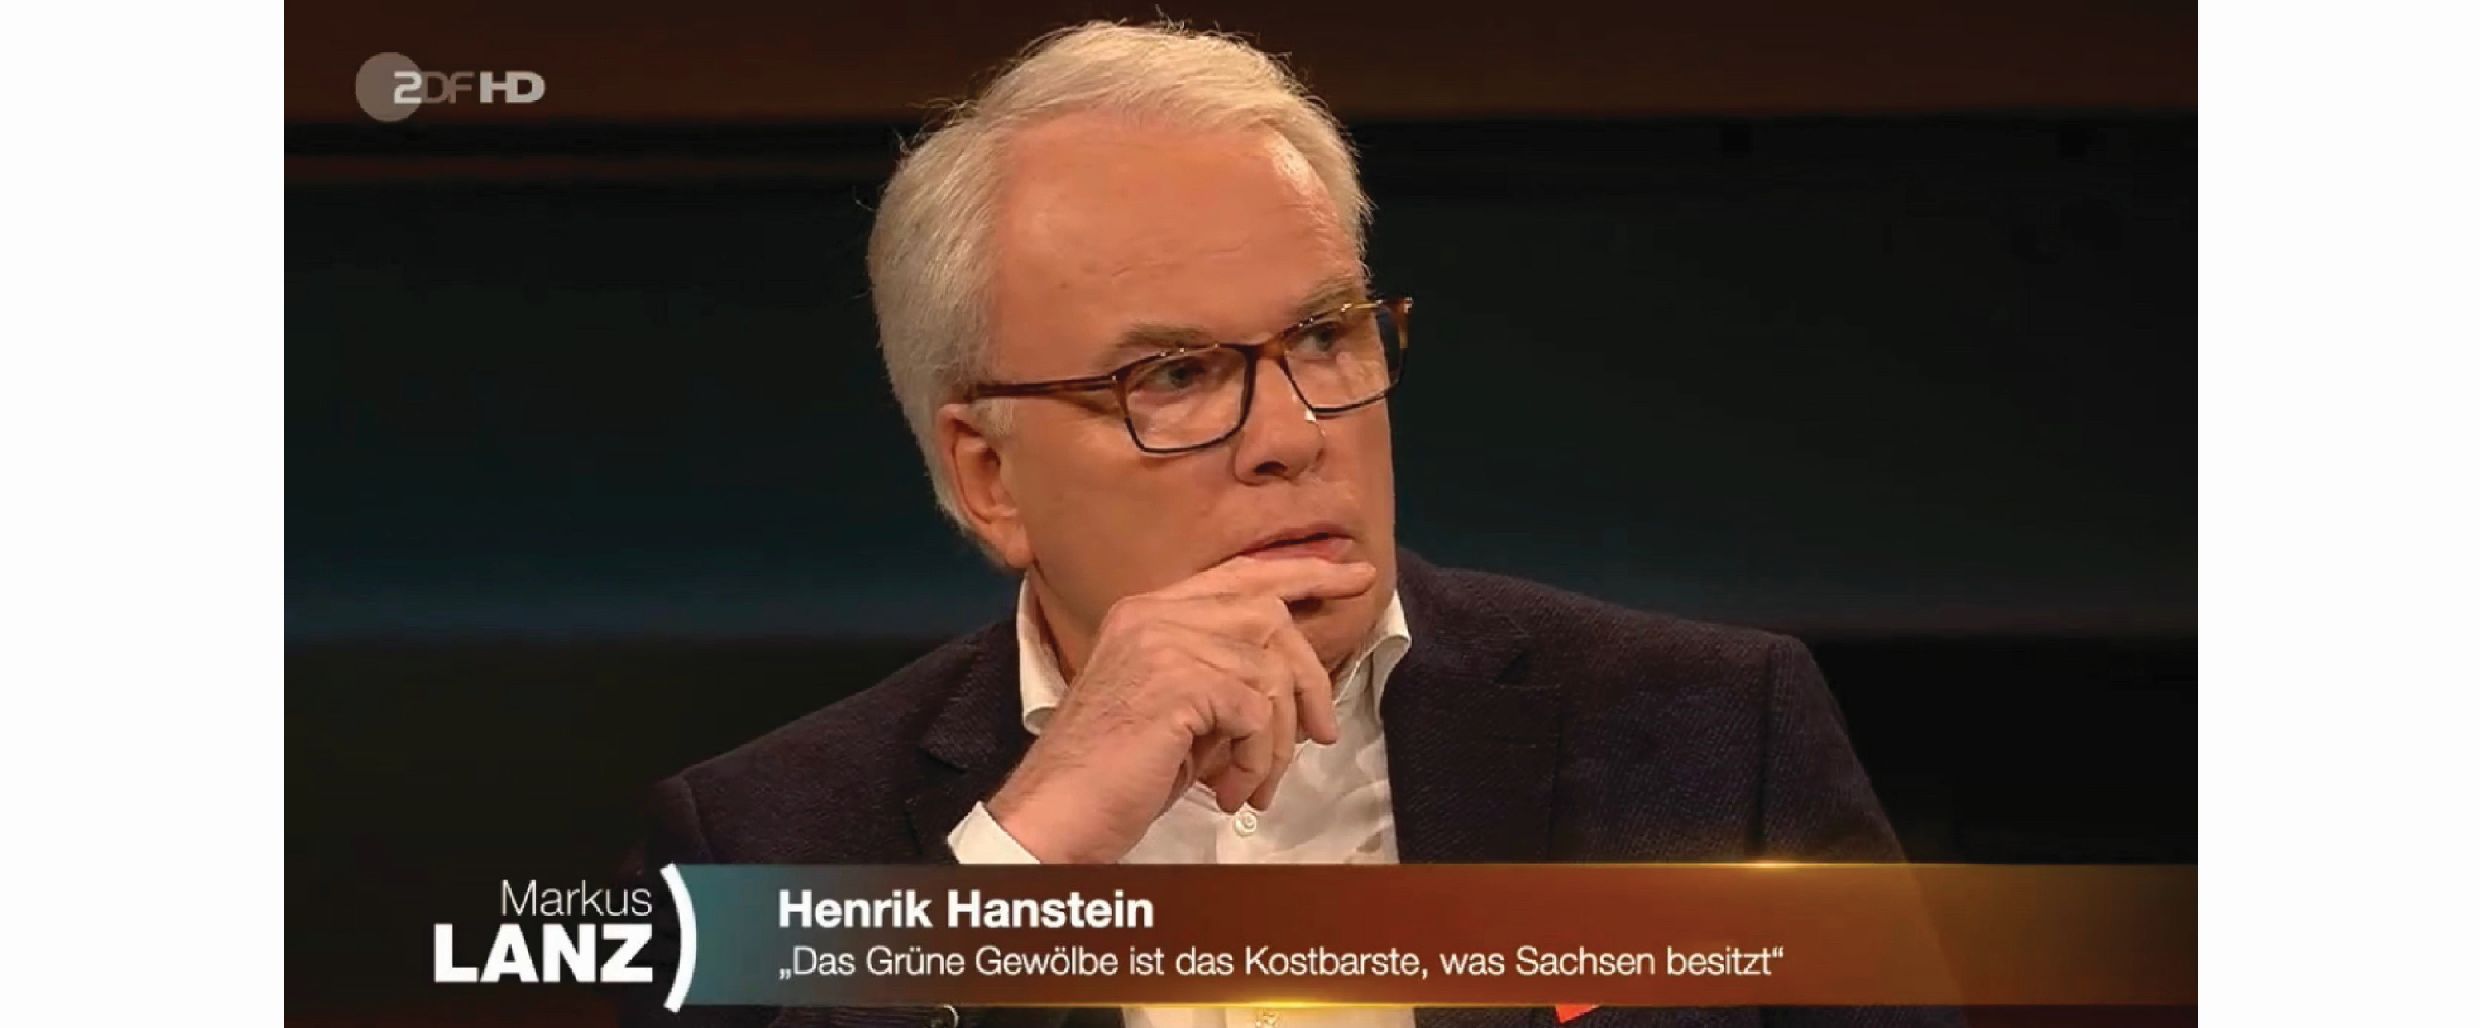 Henrik Hanstein zu Gast bei Markus Lanz